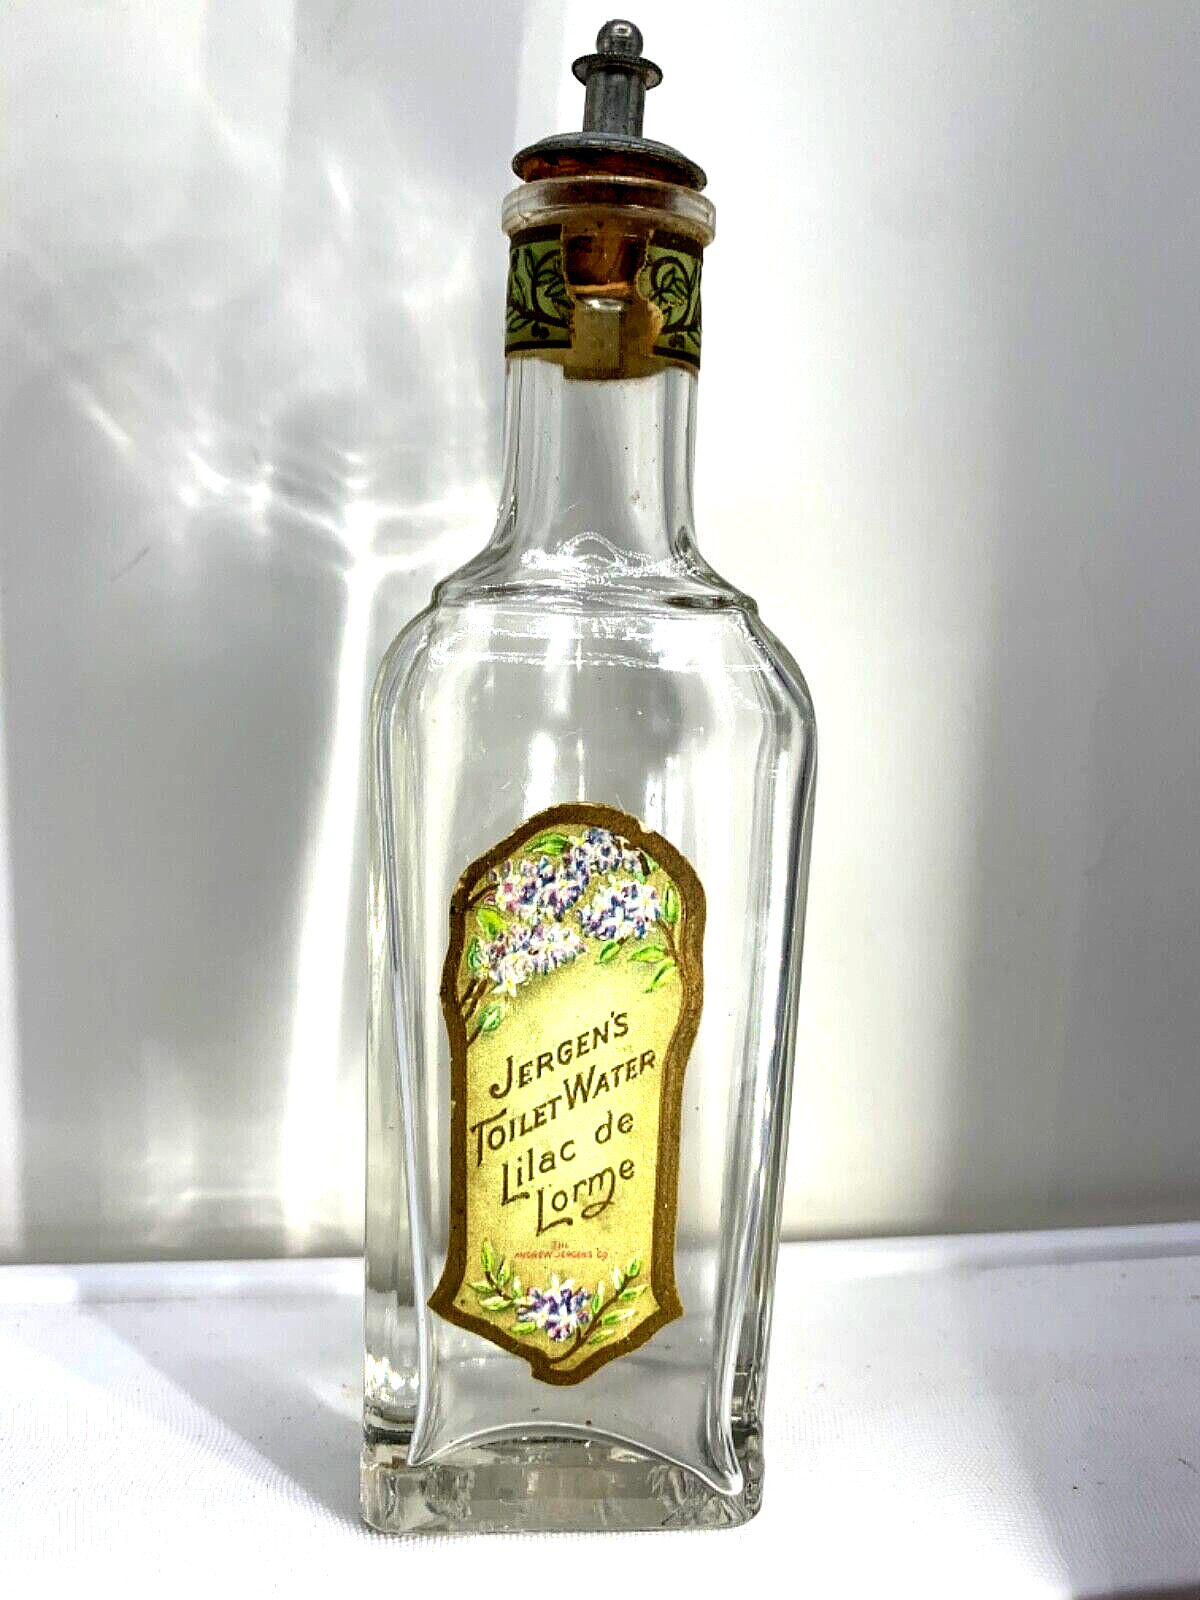 Treasure Antique perfume bottle. Rare scent Lilac de Lorme by Jergen’s.  1903.